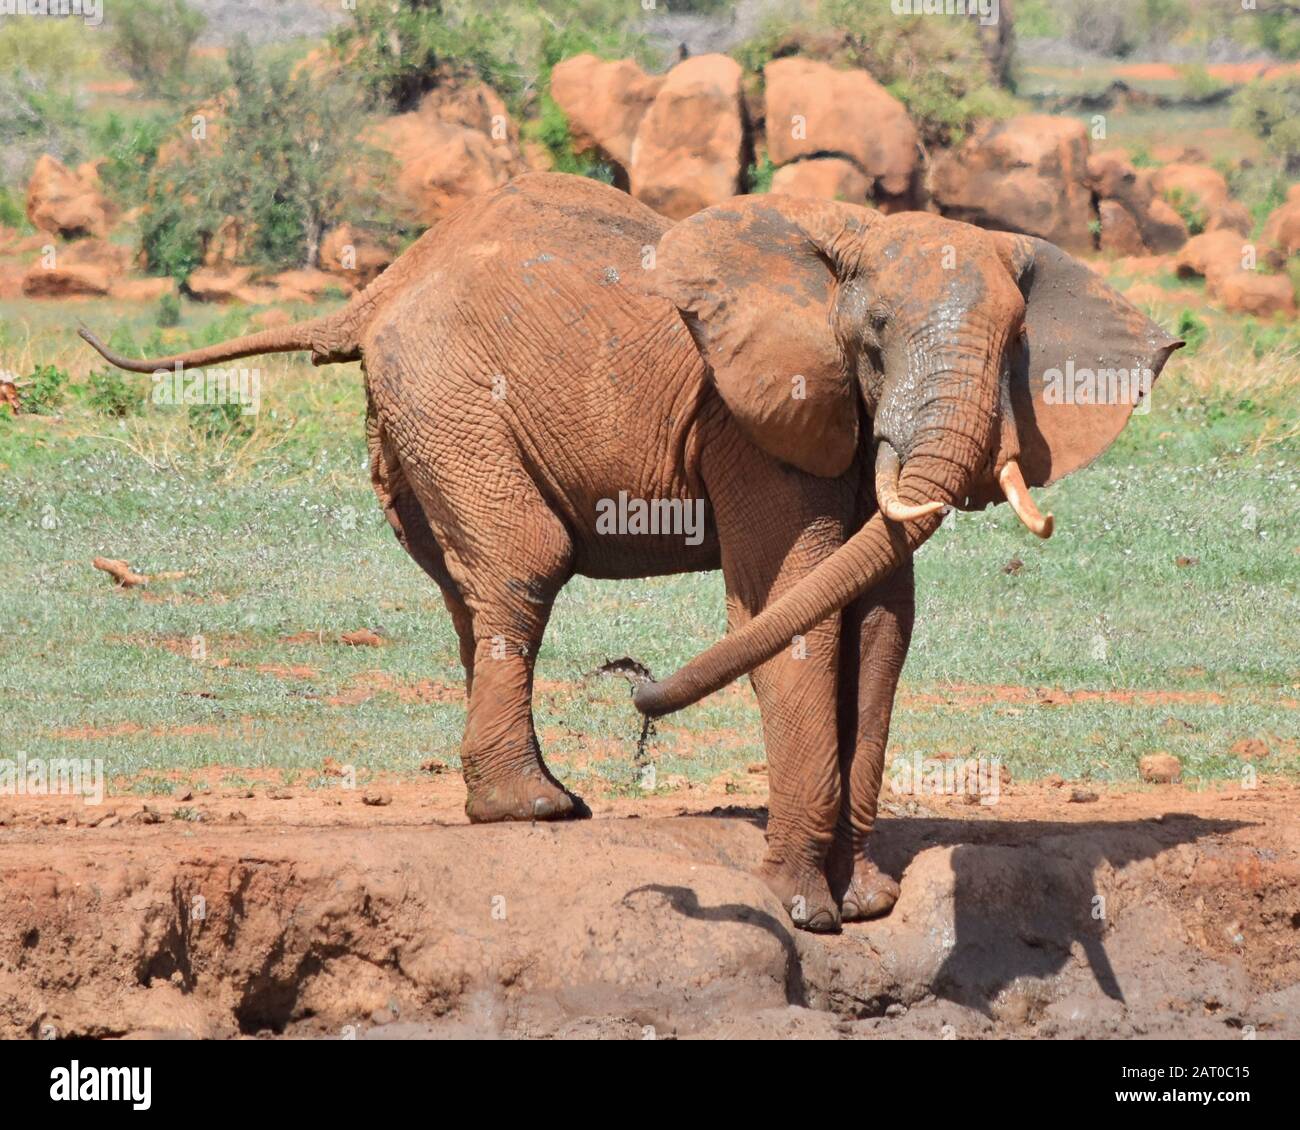 L'éléphant gros taureau se vaporise avec de la boue et de l'eau dans un trou d'eau dans le parc national de Tsavo East, au Kenya. (Loxodonta africana) Banque D'Images